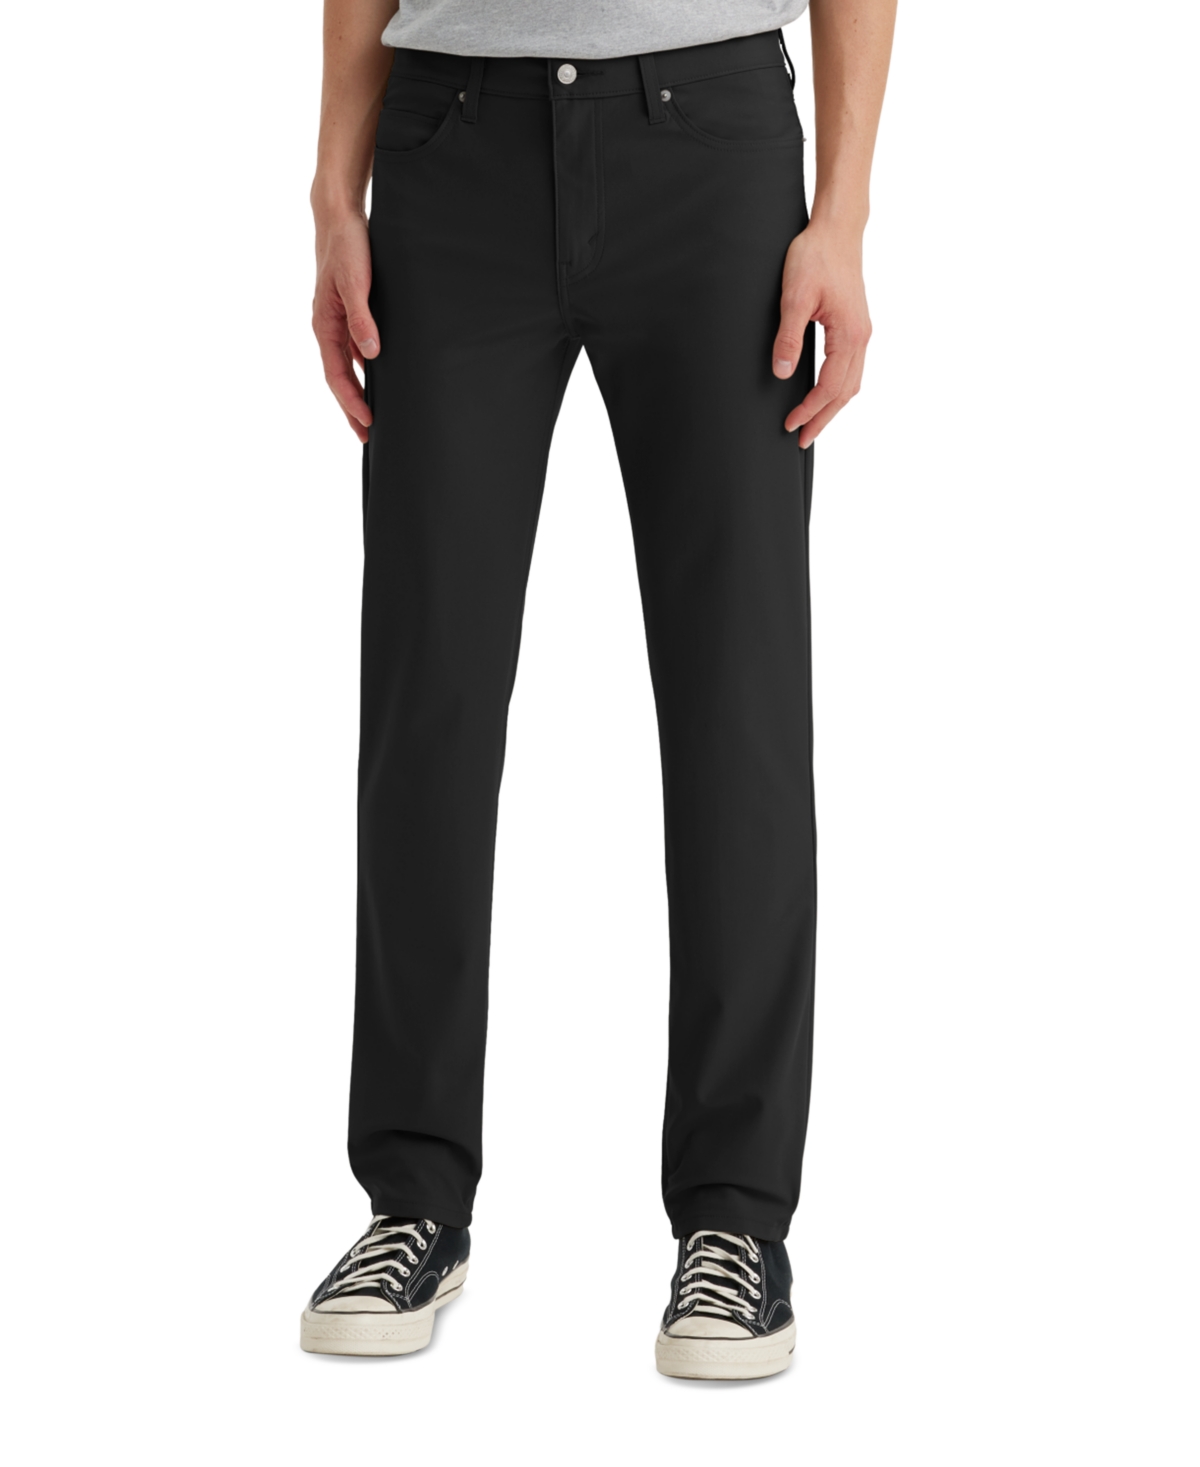 Shop Levi's Men's 511 Slim-fit Flex-tech Pants Macy's Exclusive In Black